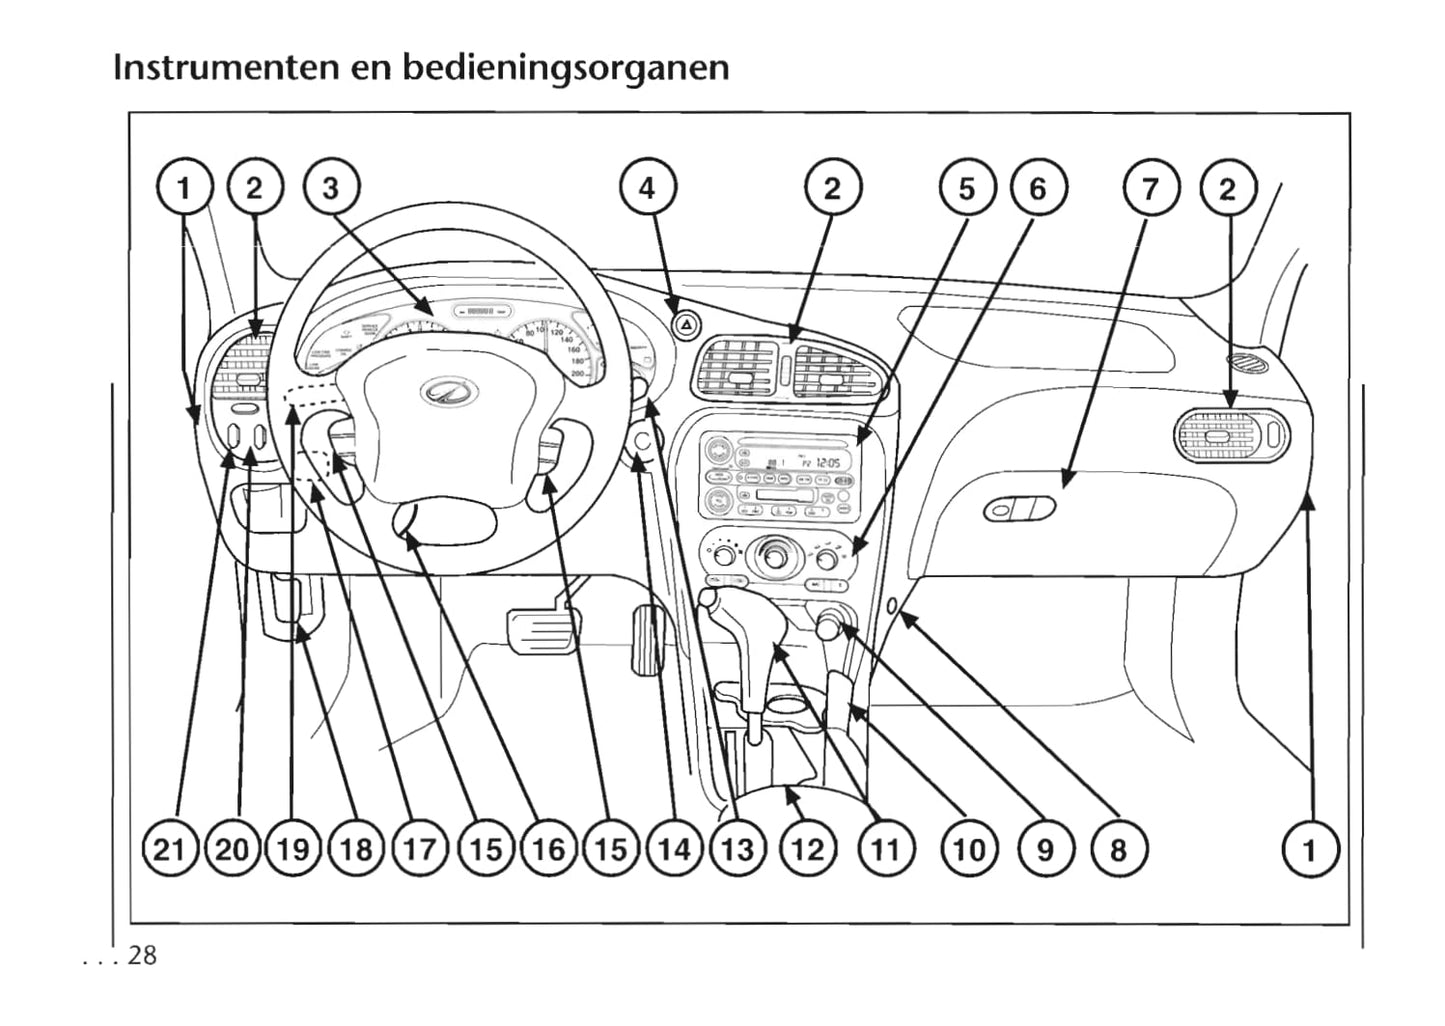 1999-2004 Chevrolet Alero Bedienungsanleitung | Niederländisch